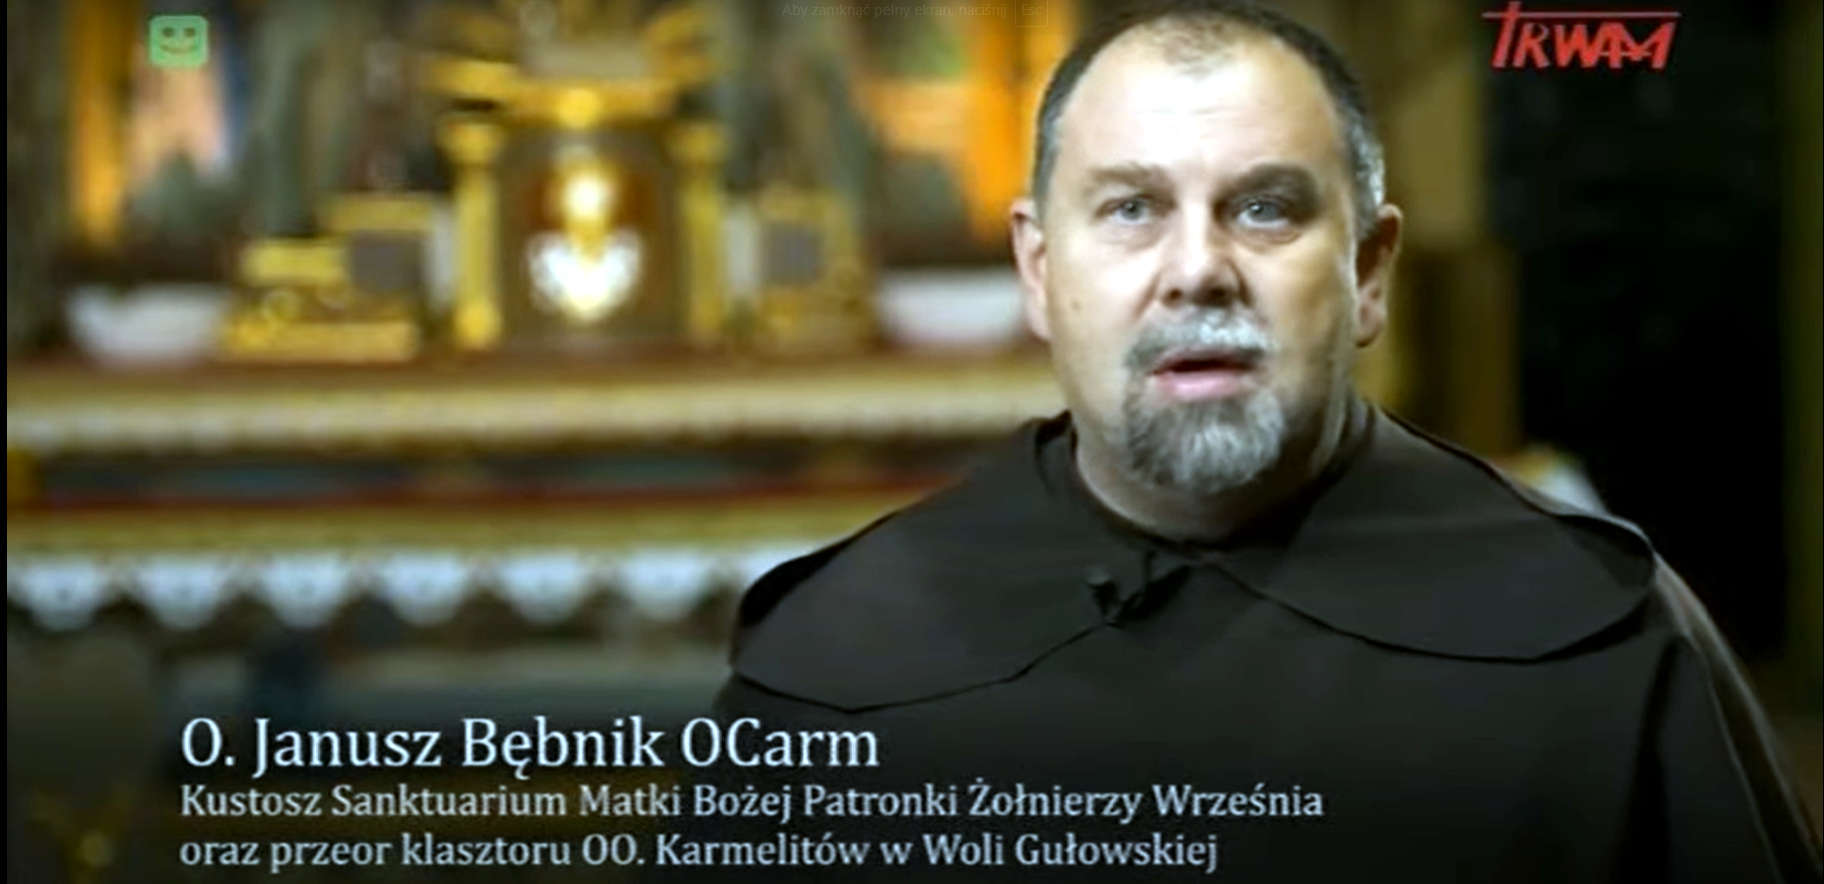 TV TRWAM wyemitowała film dokumentalny o Sanktuarium w Woli Gułowskiej  - Zdjęcie główne